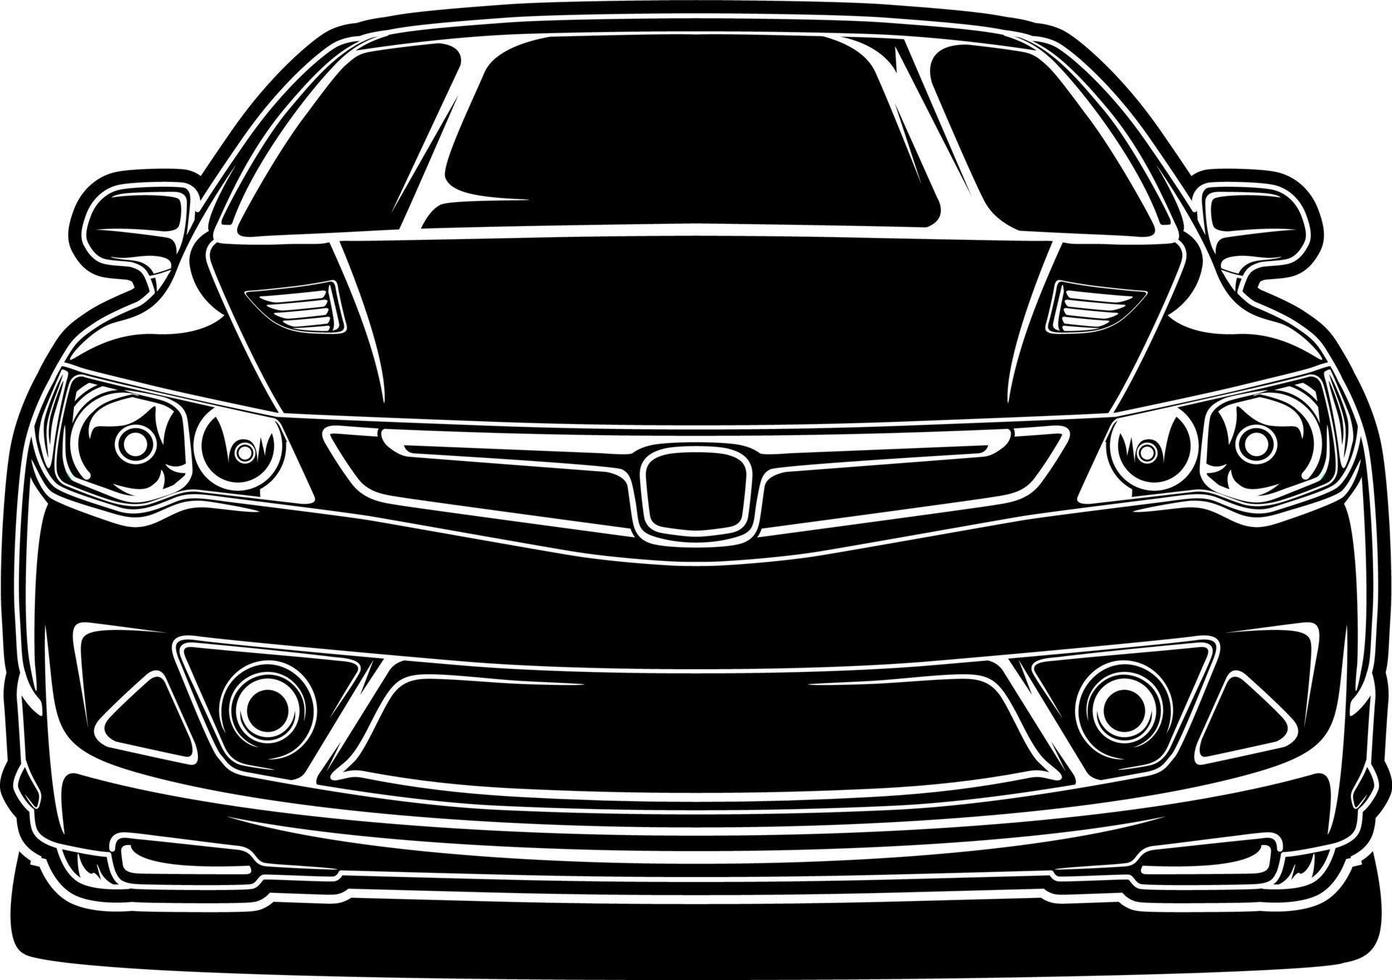 zwart-witte auto vectorillustratie voor conceptueel ontwerp vector